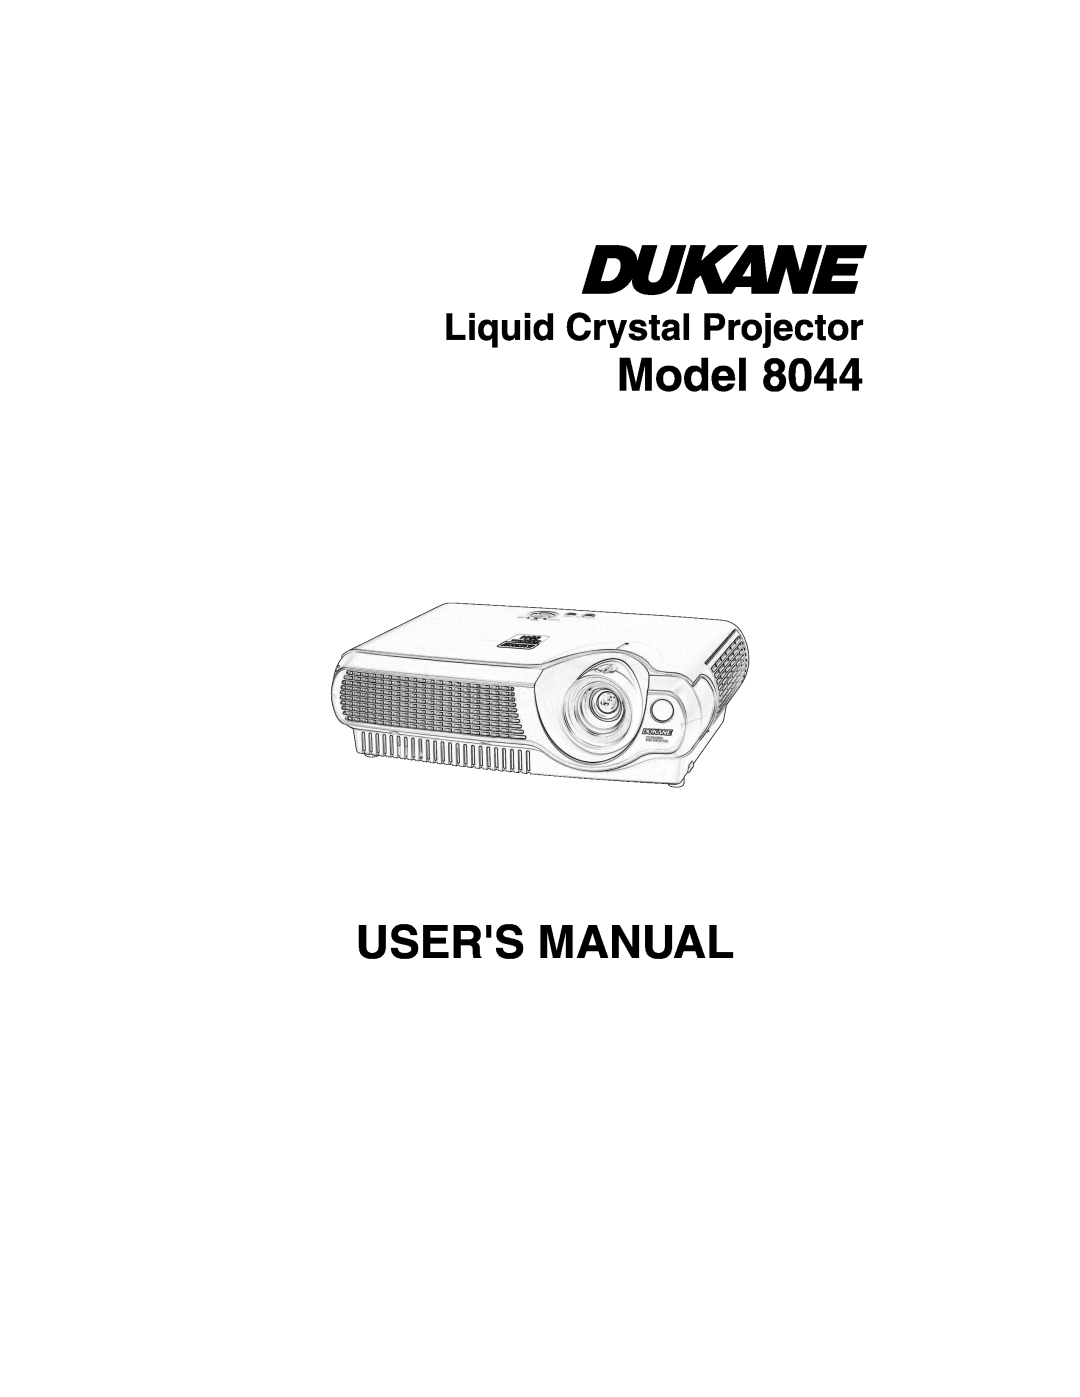 Dukane 8044 manual Model USERS MANUAL, Liquid Crystal Projector 